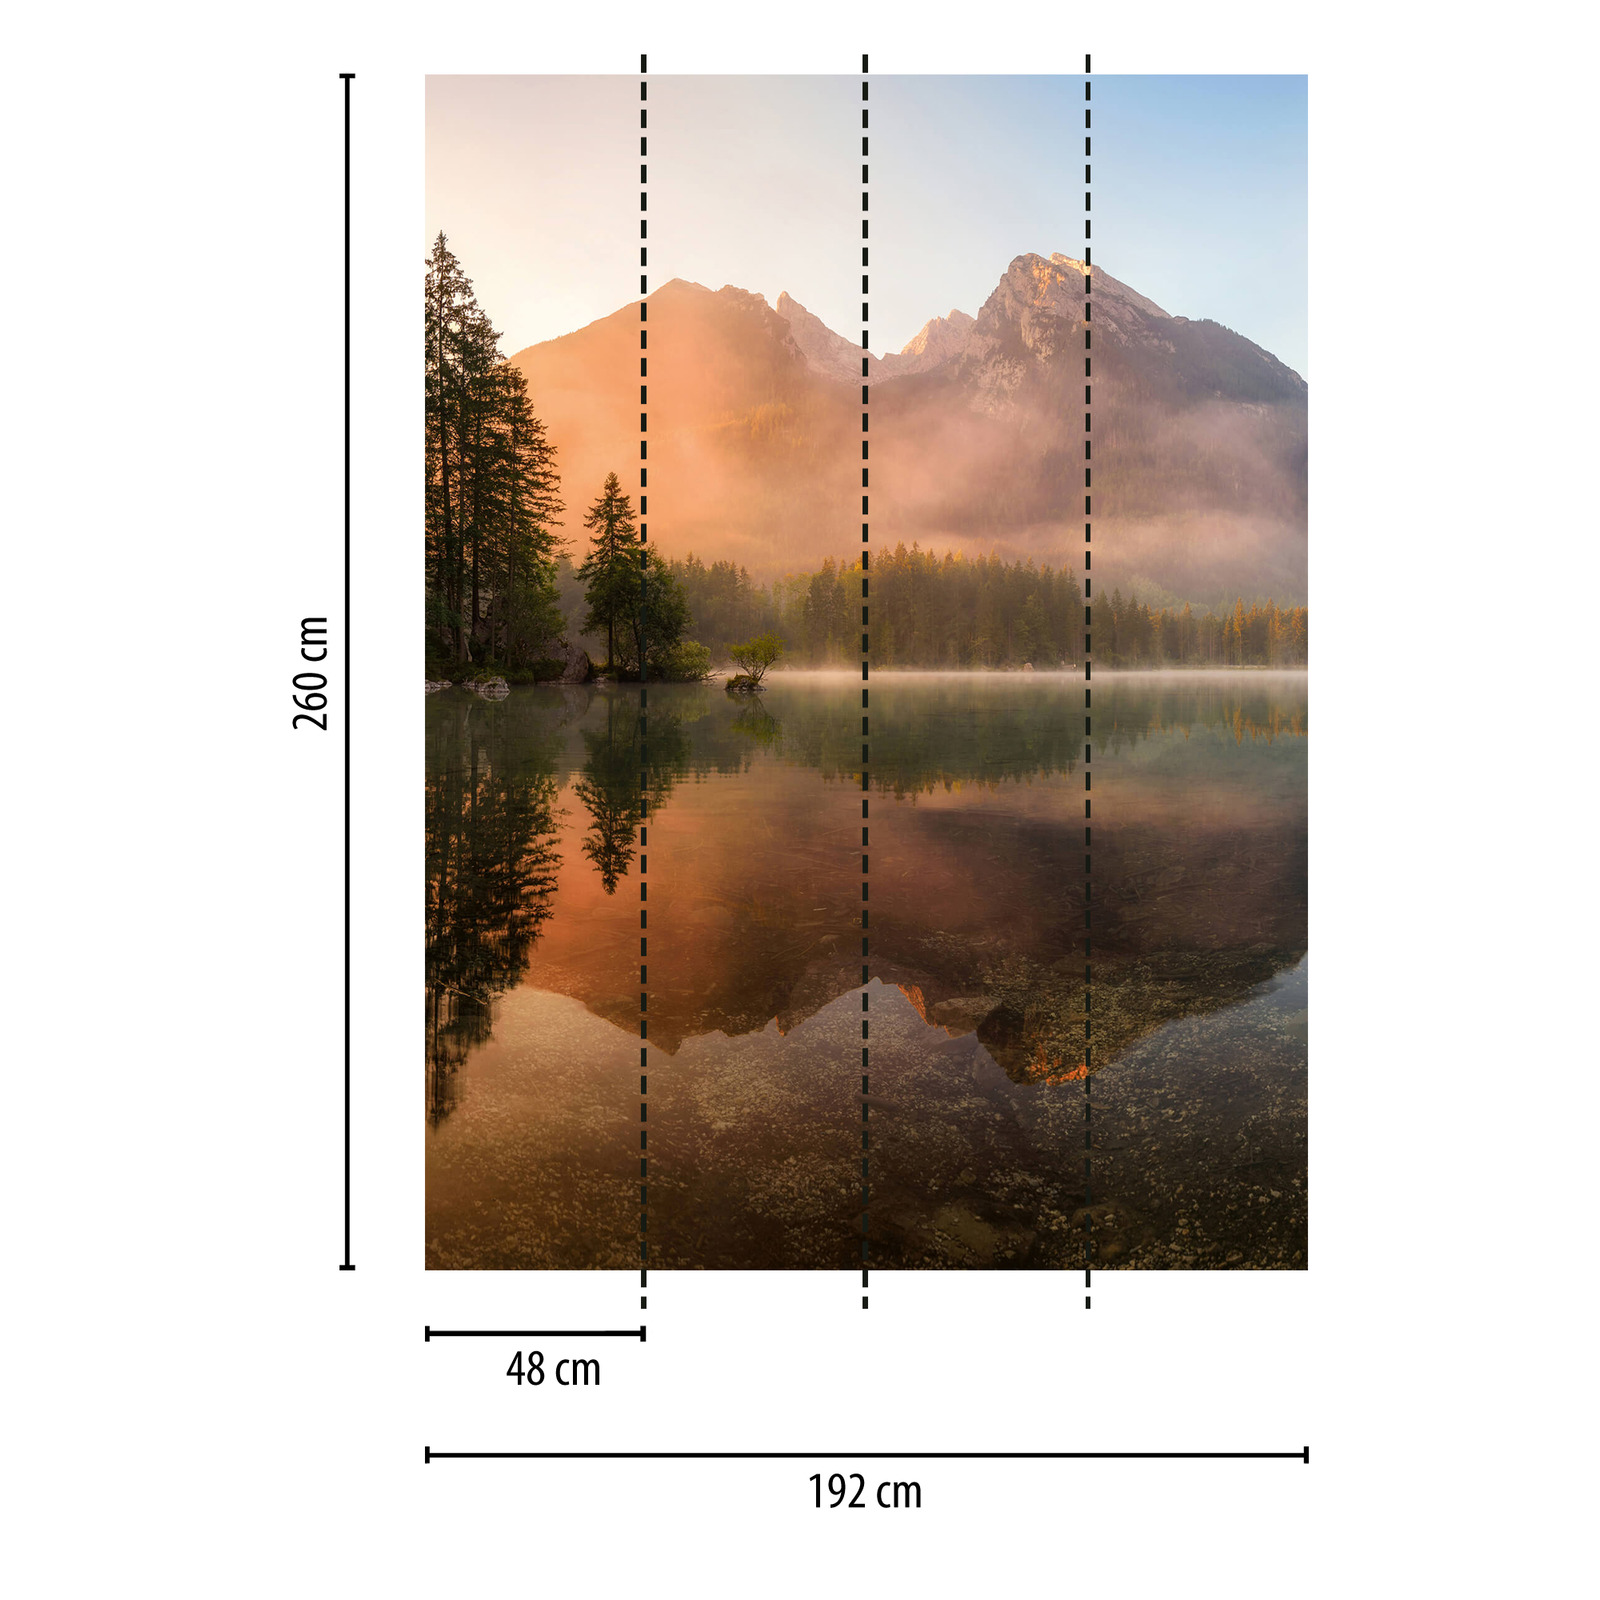             Fototapete Berge und Bäume am See – Grün, Orange, Braun
        